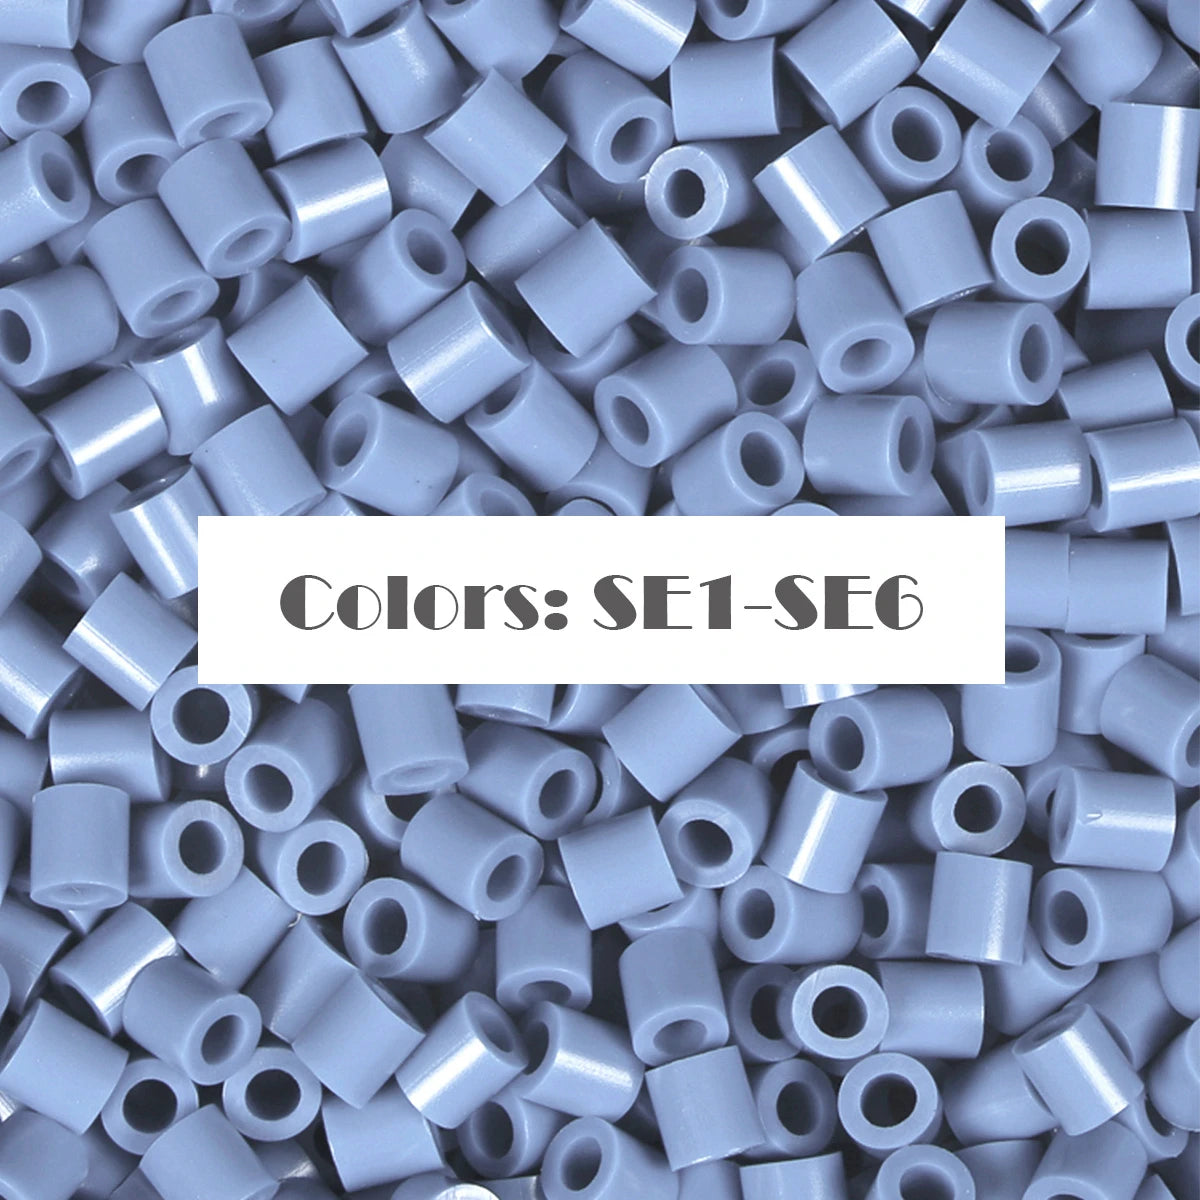 (SE1-SE6) Nouvelle série de couleurs Bleu S-1KG en vrac